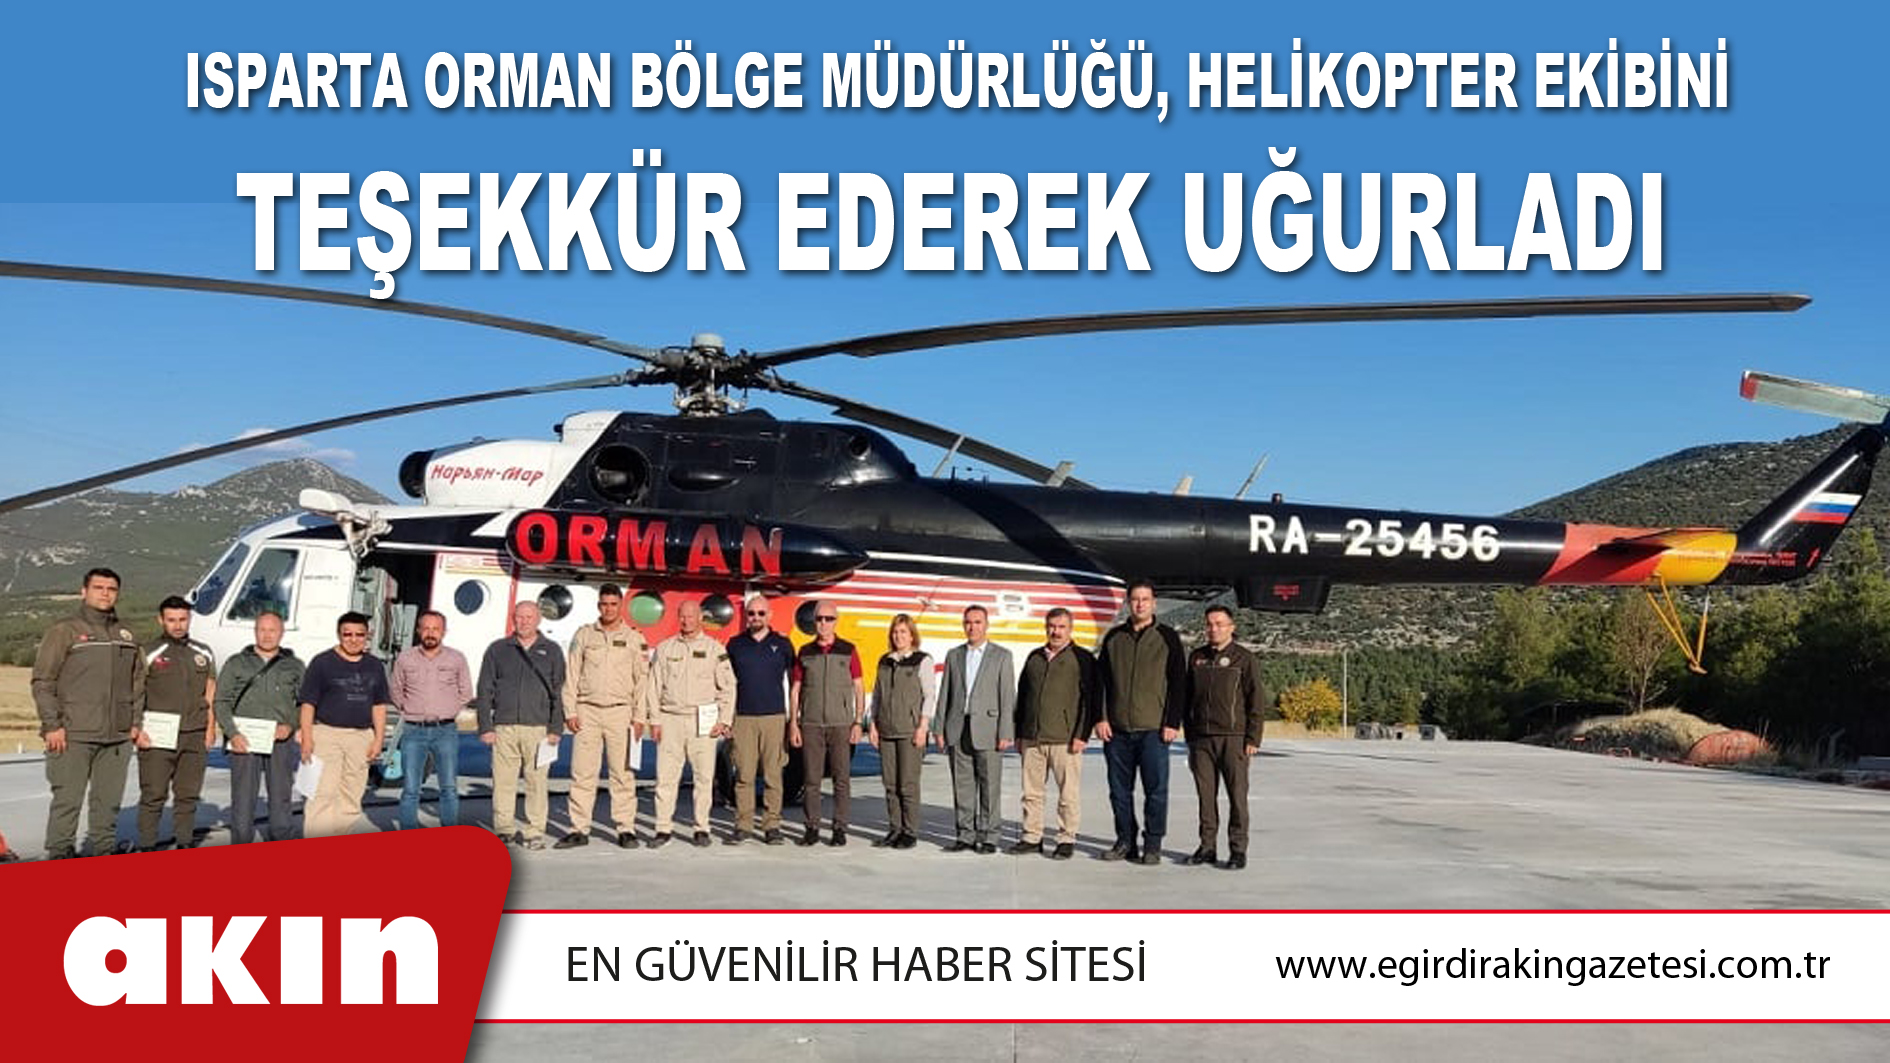 Isparta Orman Bölge Müdürlüğü, Helikopter Ekibini Teşekkür Ederek Uğurladı 